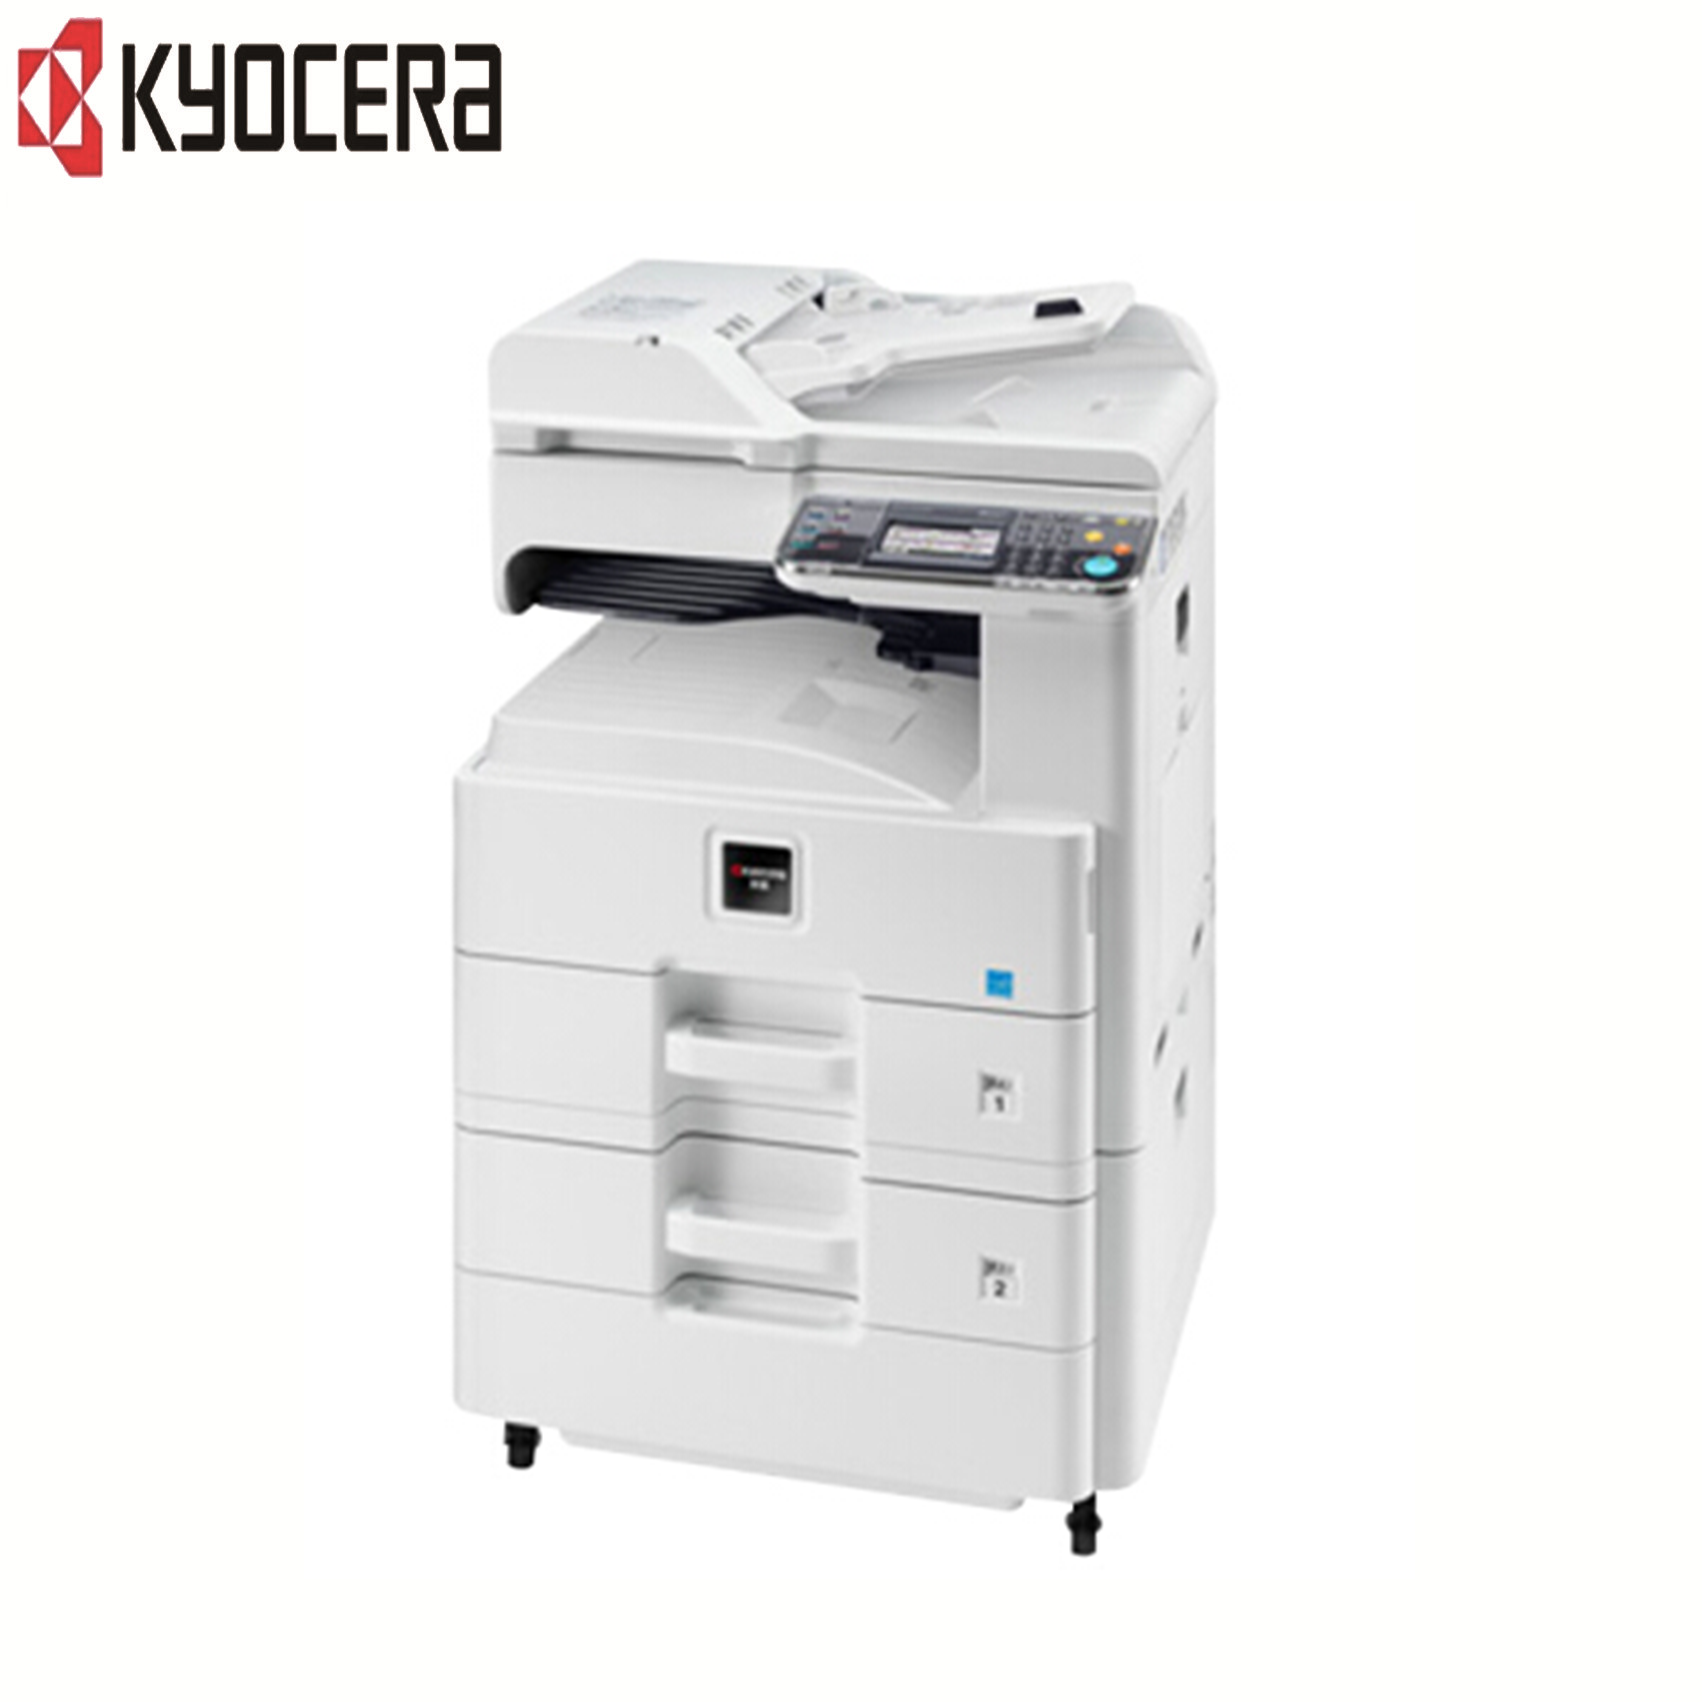 京瓷(KYOCERA)M4028idn 黑白多功能数码复合机(打印/复印/扫描)